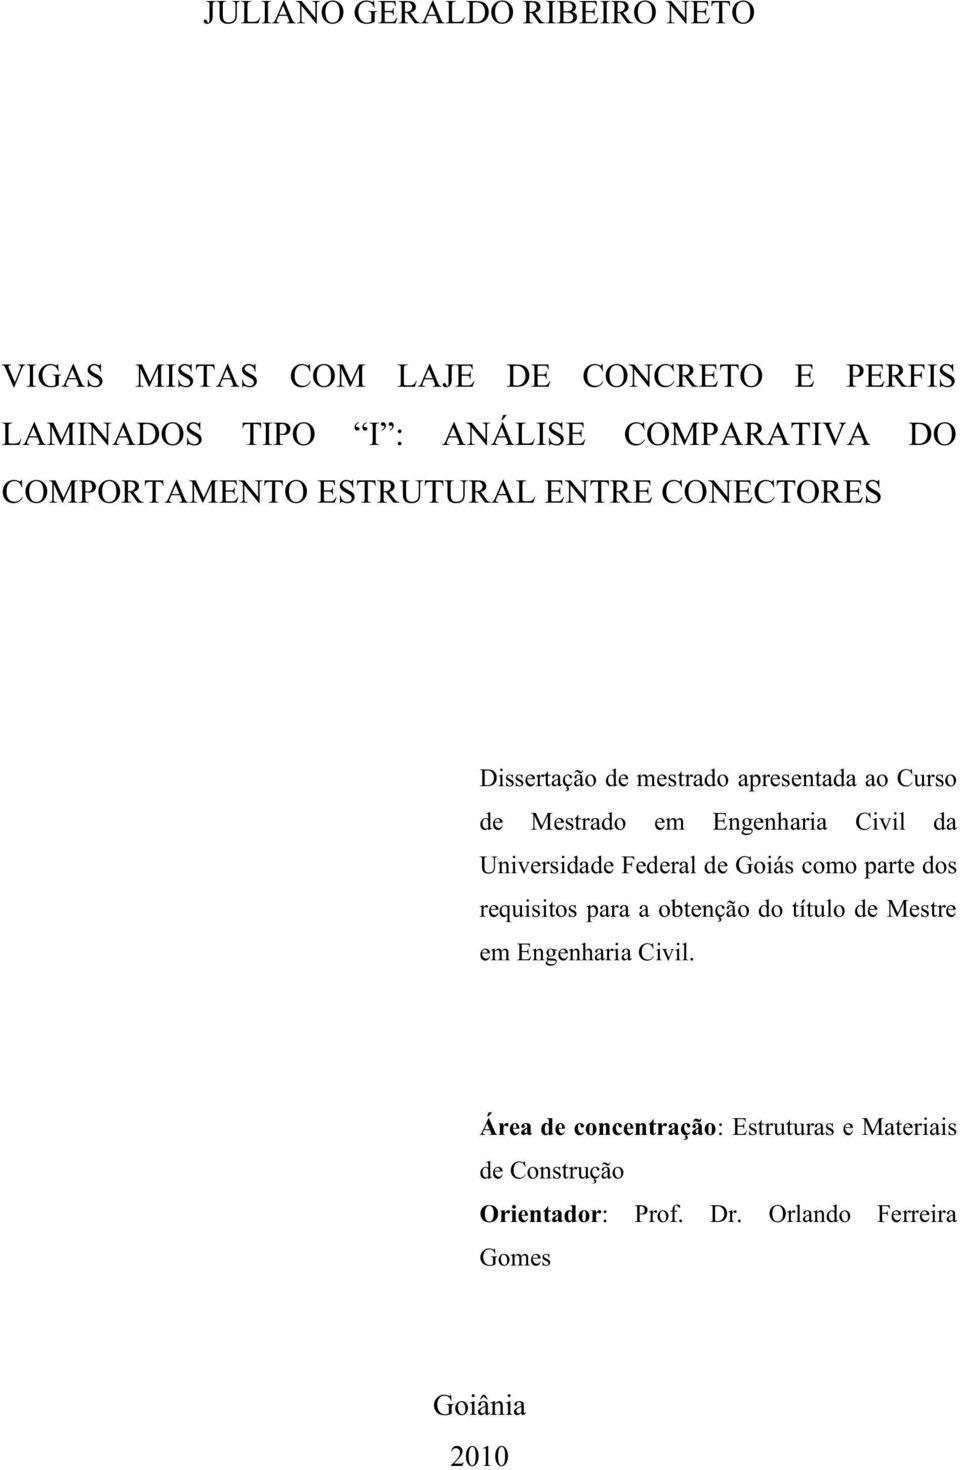 Universidade Federal de Goiás como parte dos requisitos para a obtenção do título de Mestre em Engenharia Civil.